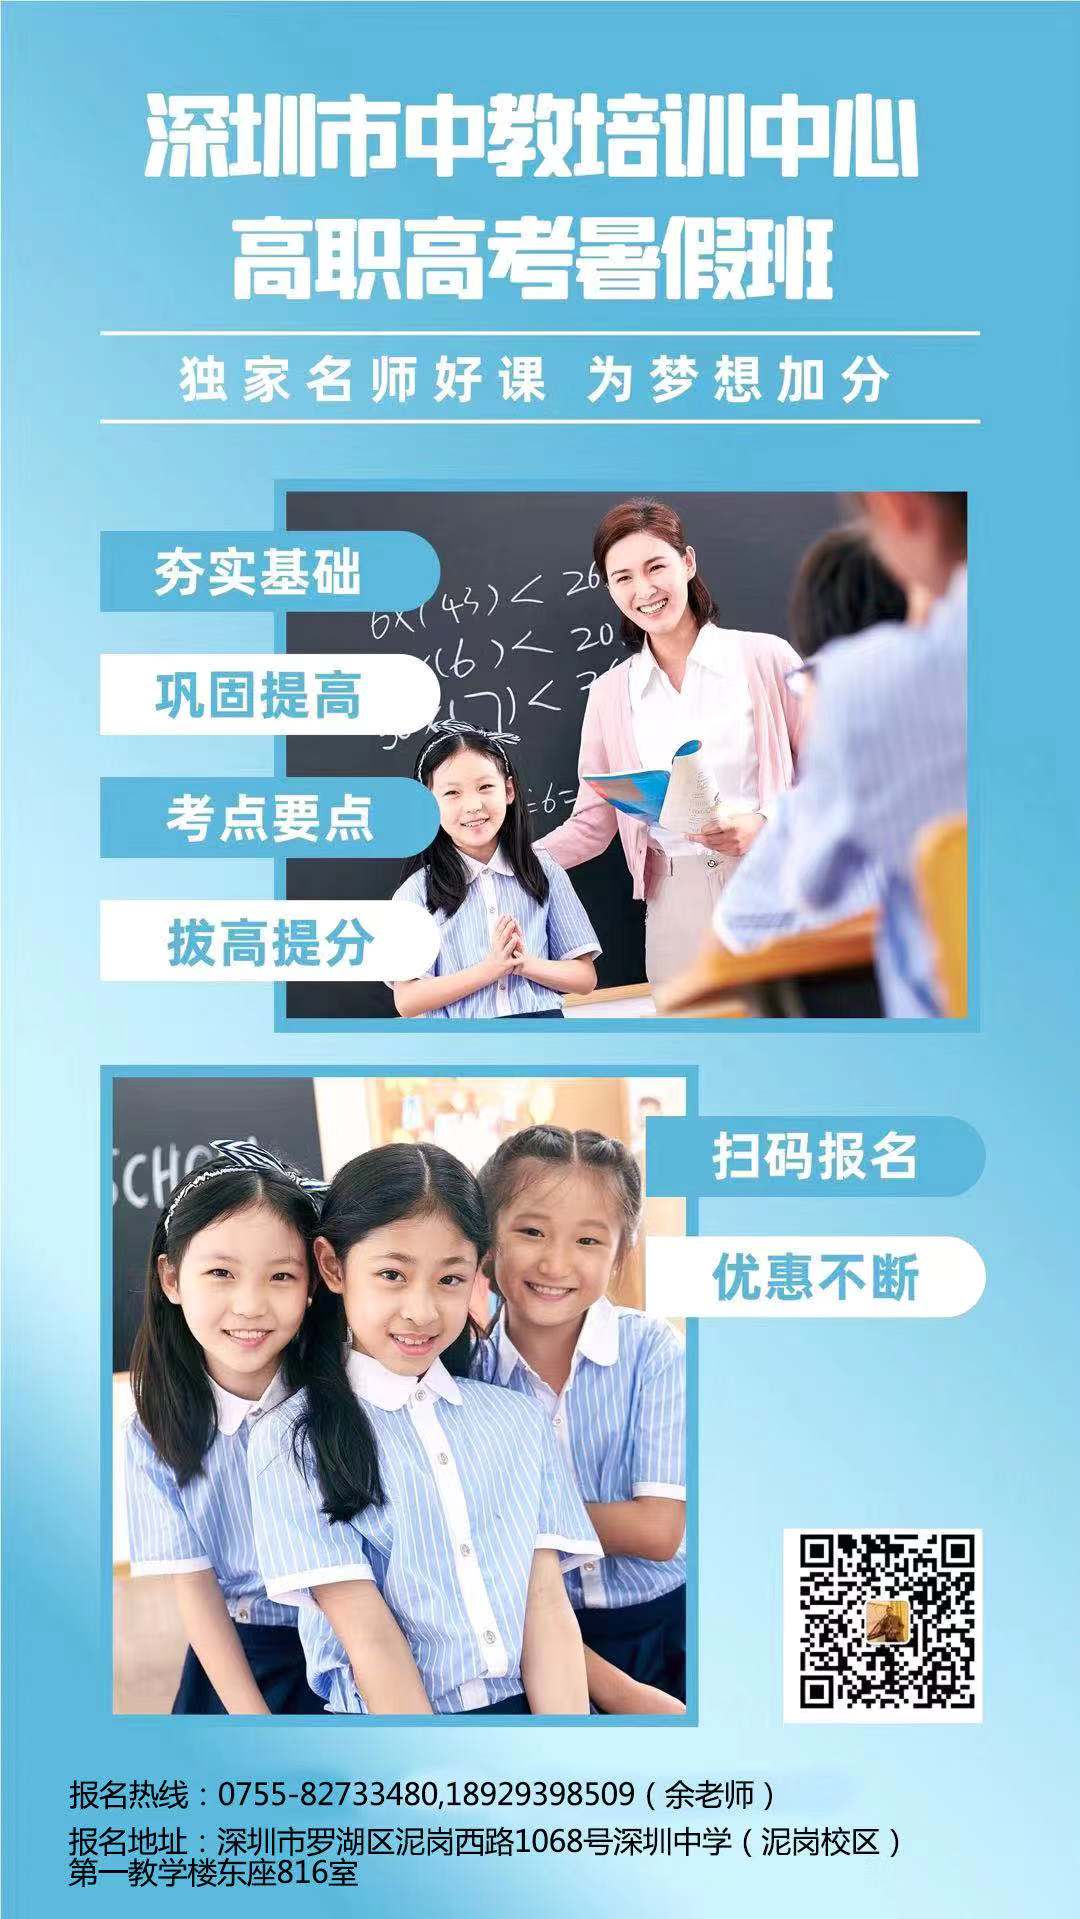 中教培训2022届广东省3+证书高考暑假招生